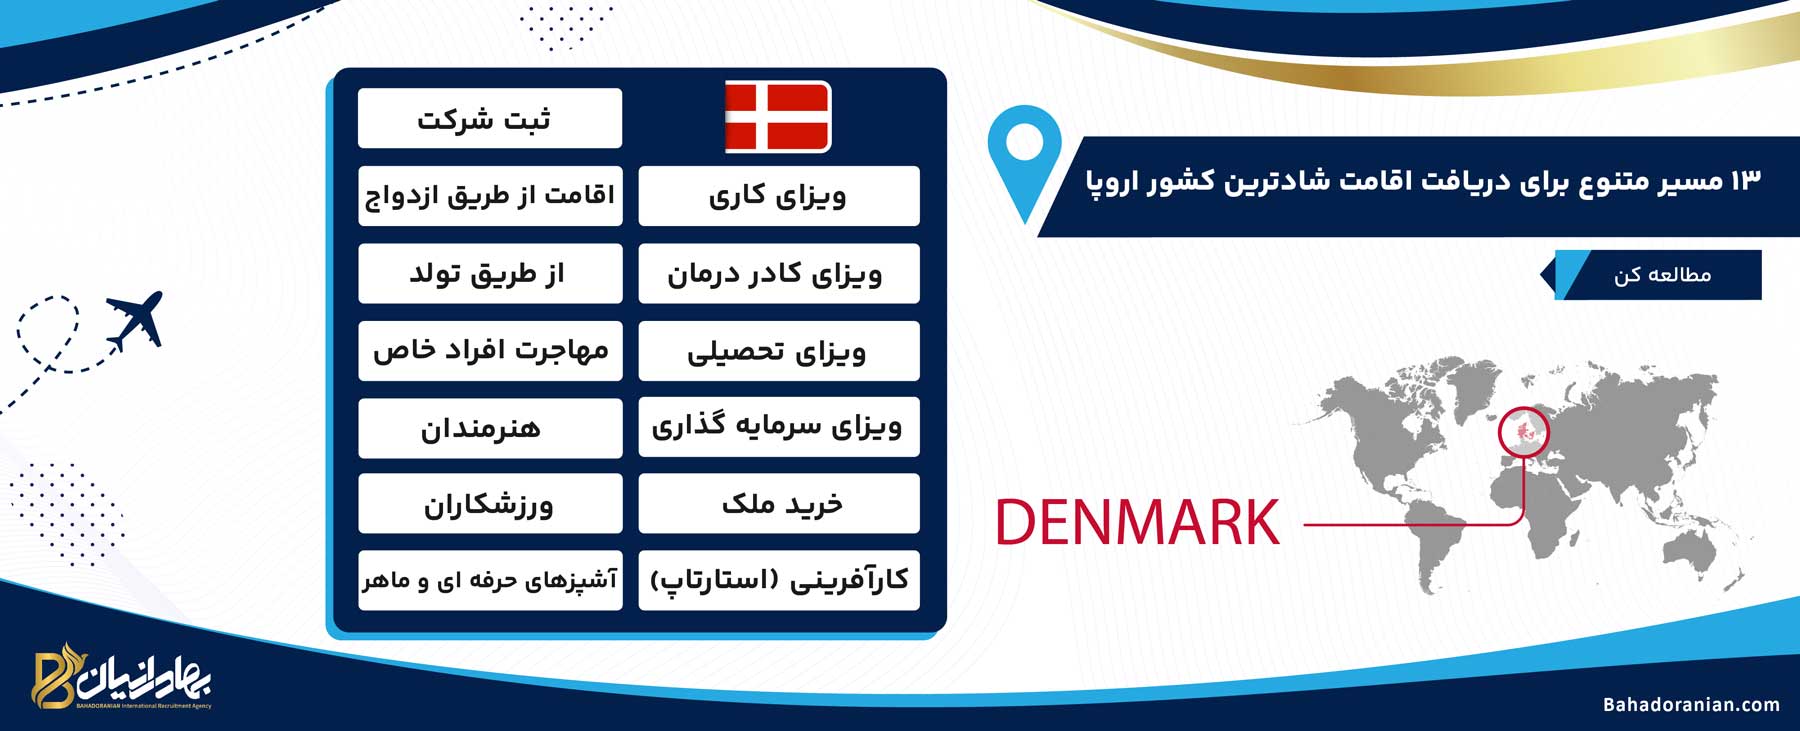 روشهای دریافت اقامت دانمارک